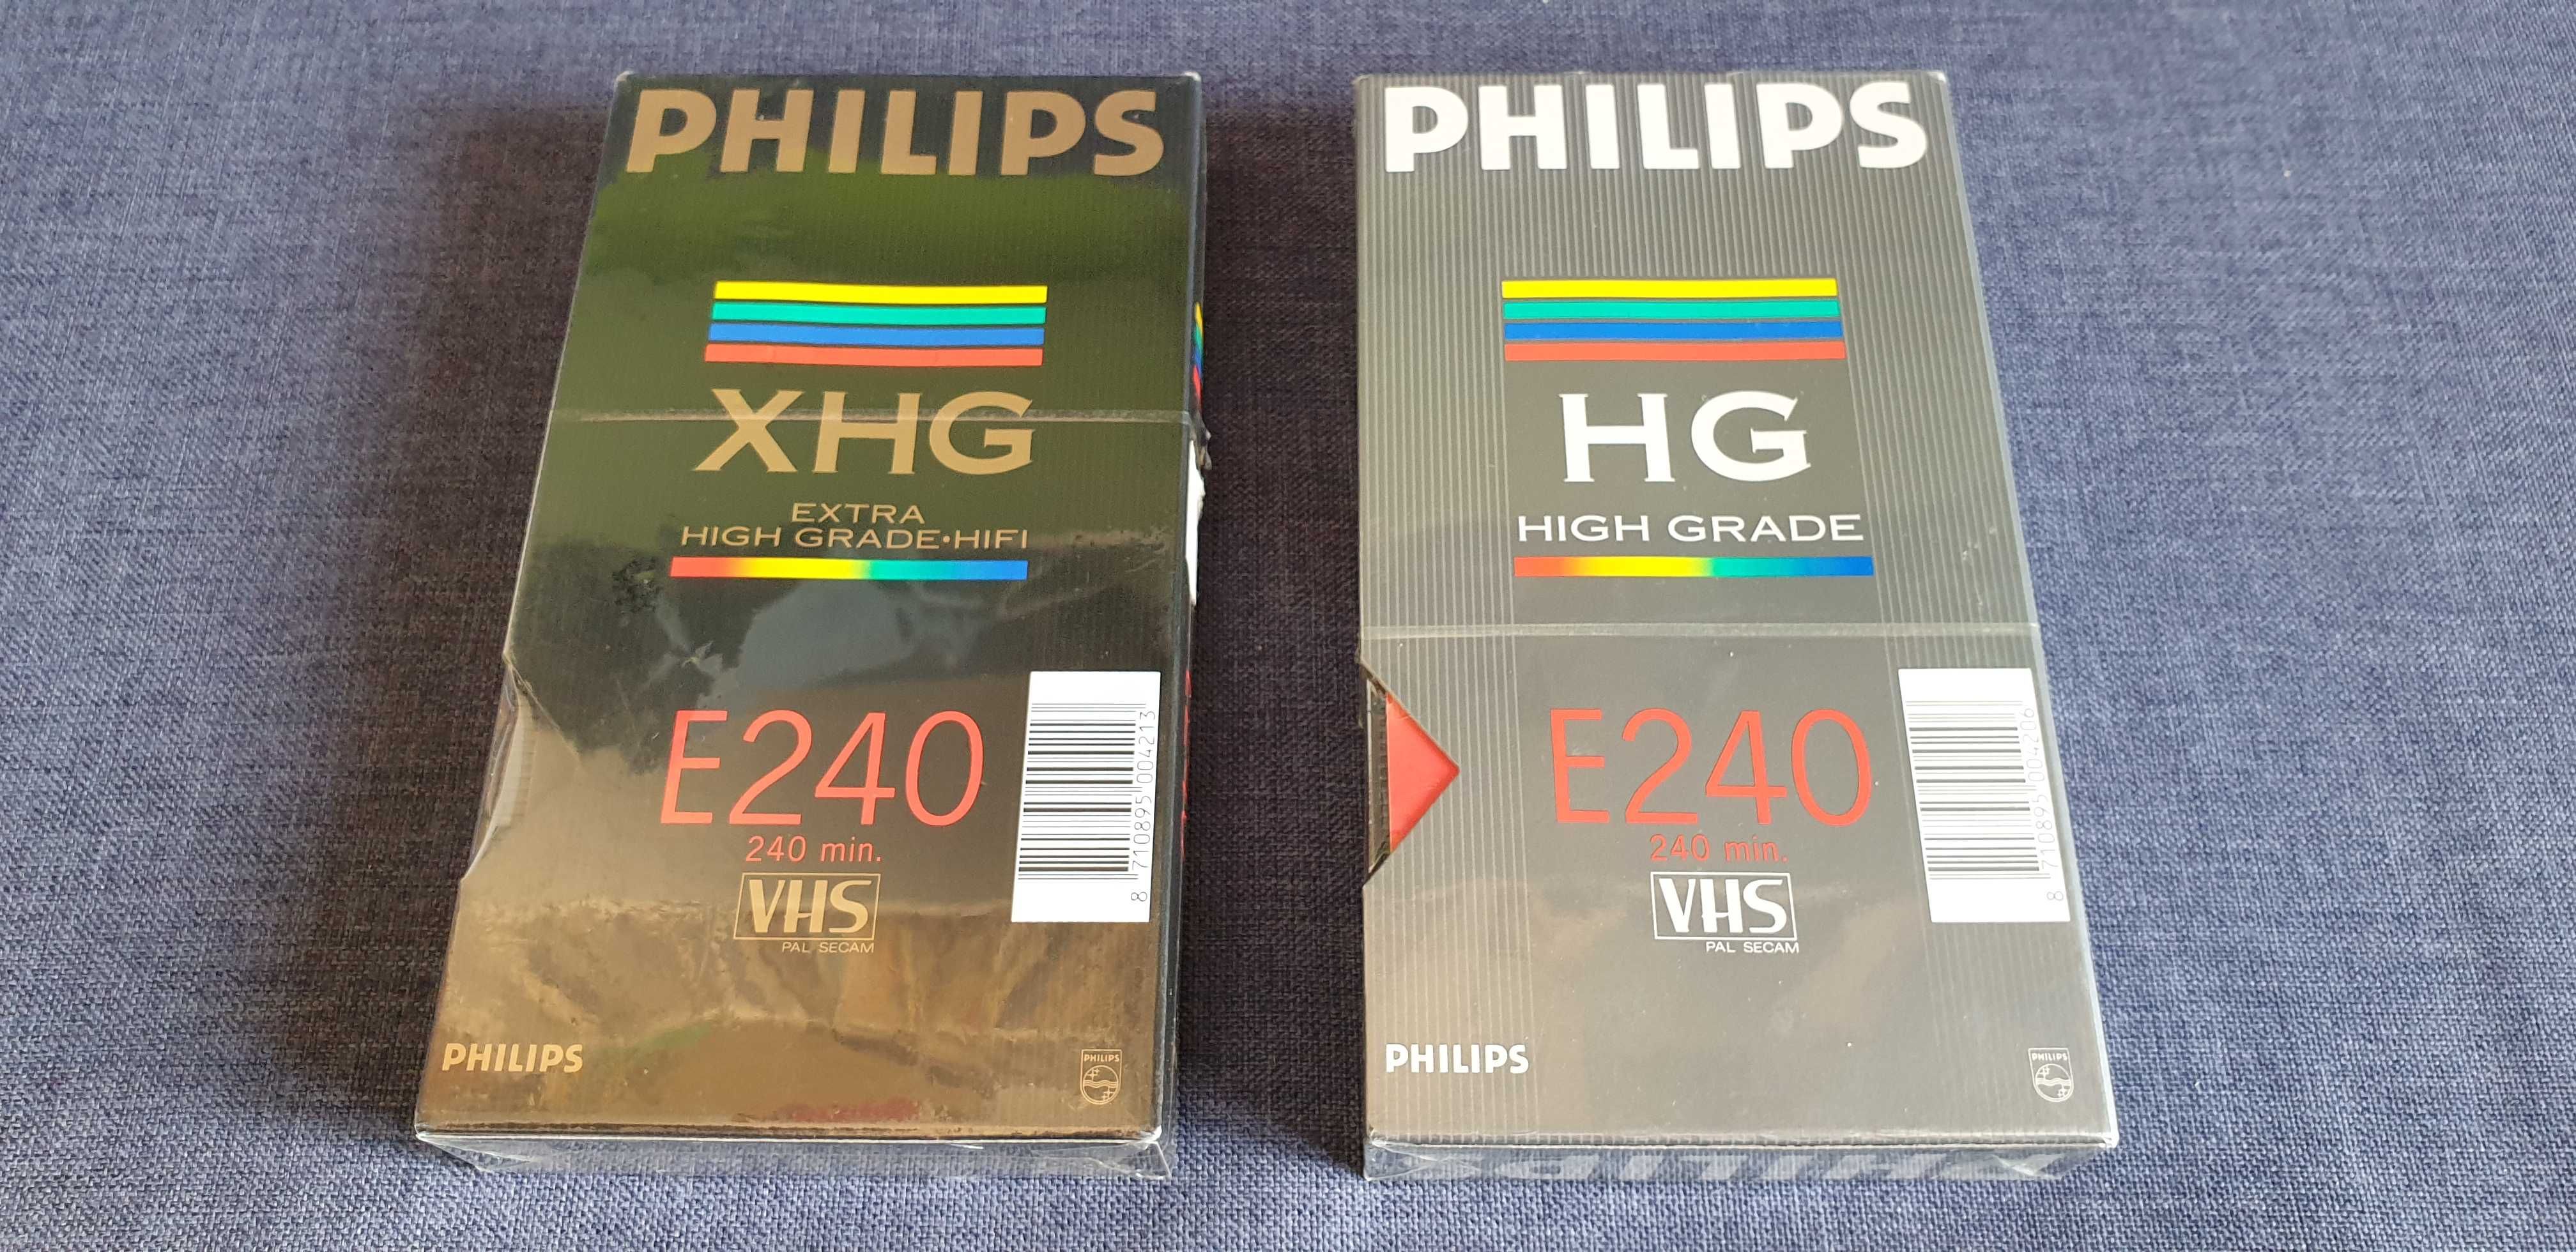 Philips XHG 240 Philips HG 240, kasety VHS, Nowe